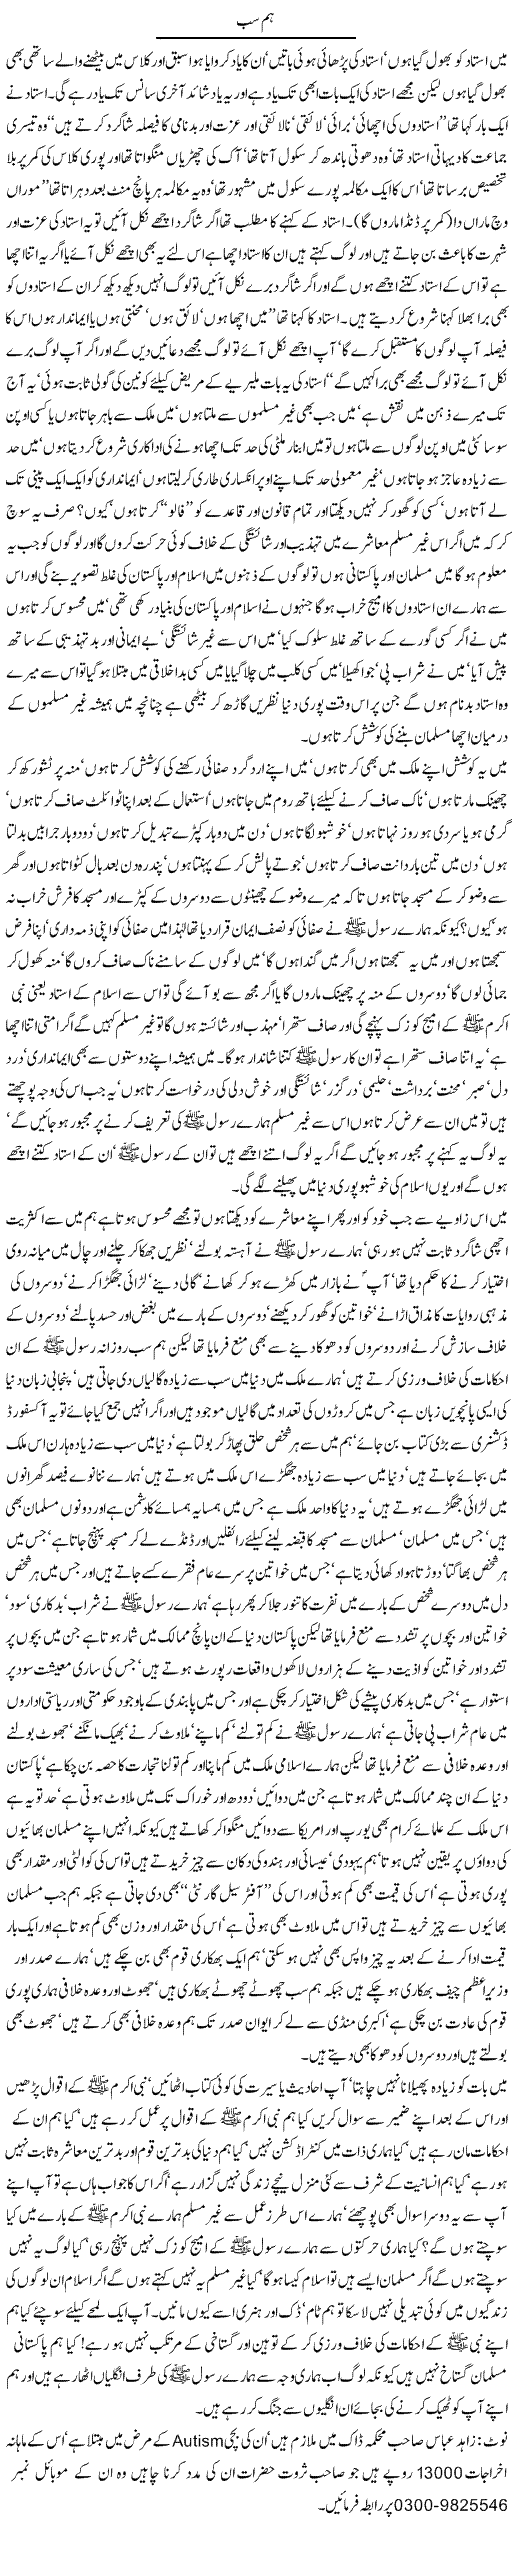 We All Muslims - Urdu Column By Javed Chaudhry